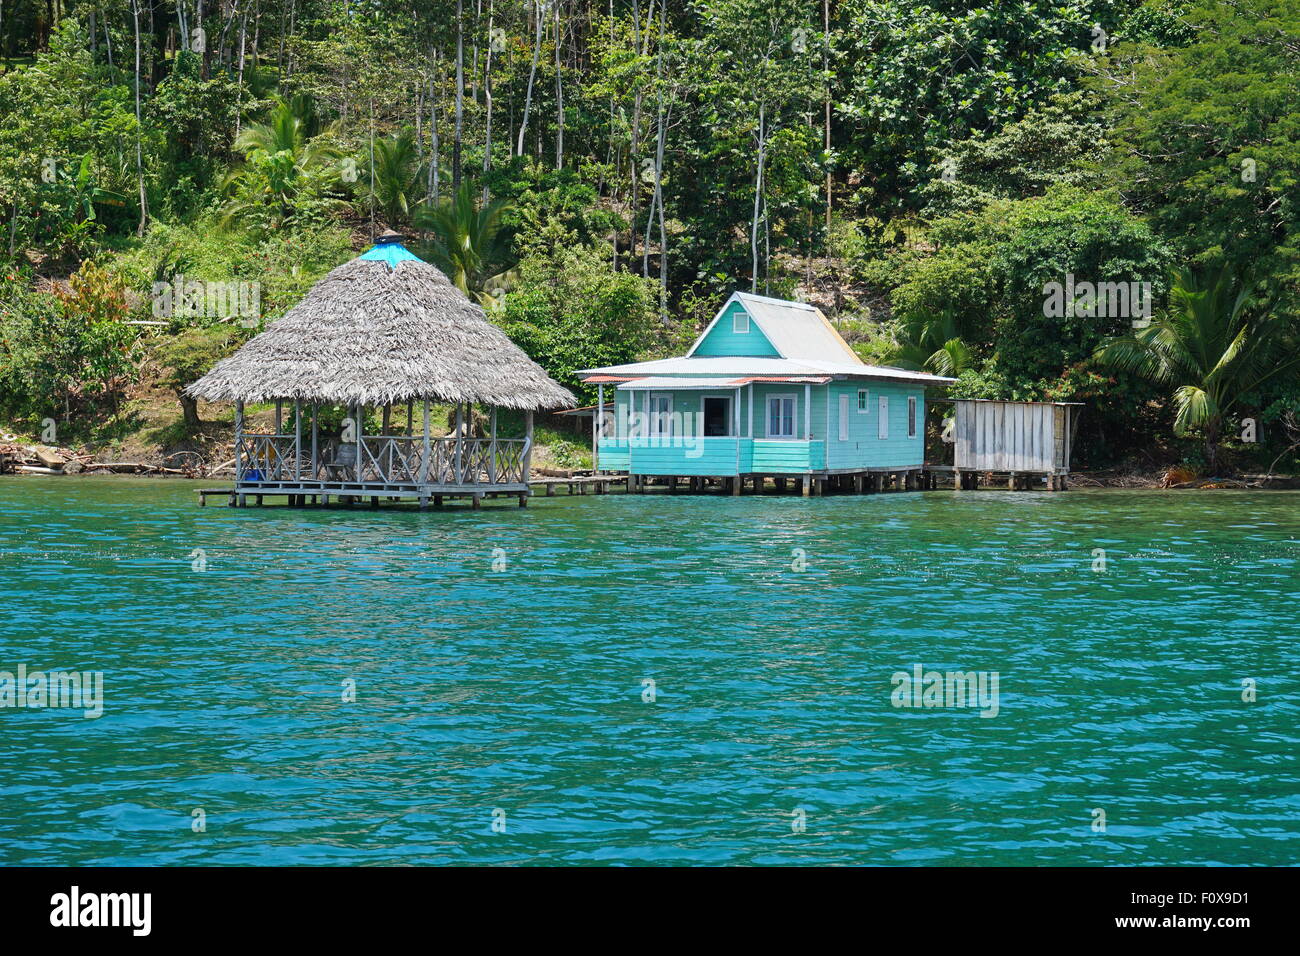 Maison typique avec hutte de chaume au-dessus de l'eau dans la région de Bocas del Toro, PANAMA, côte des Caraïbes de l'Amérique centrale Banque D'Images